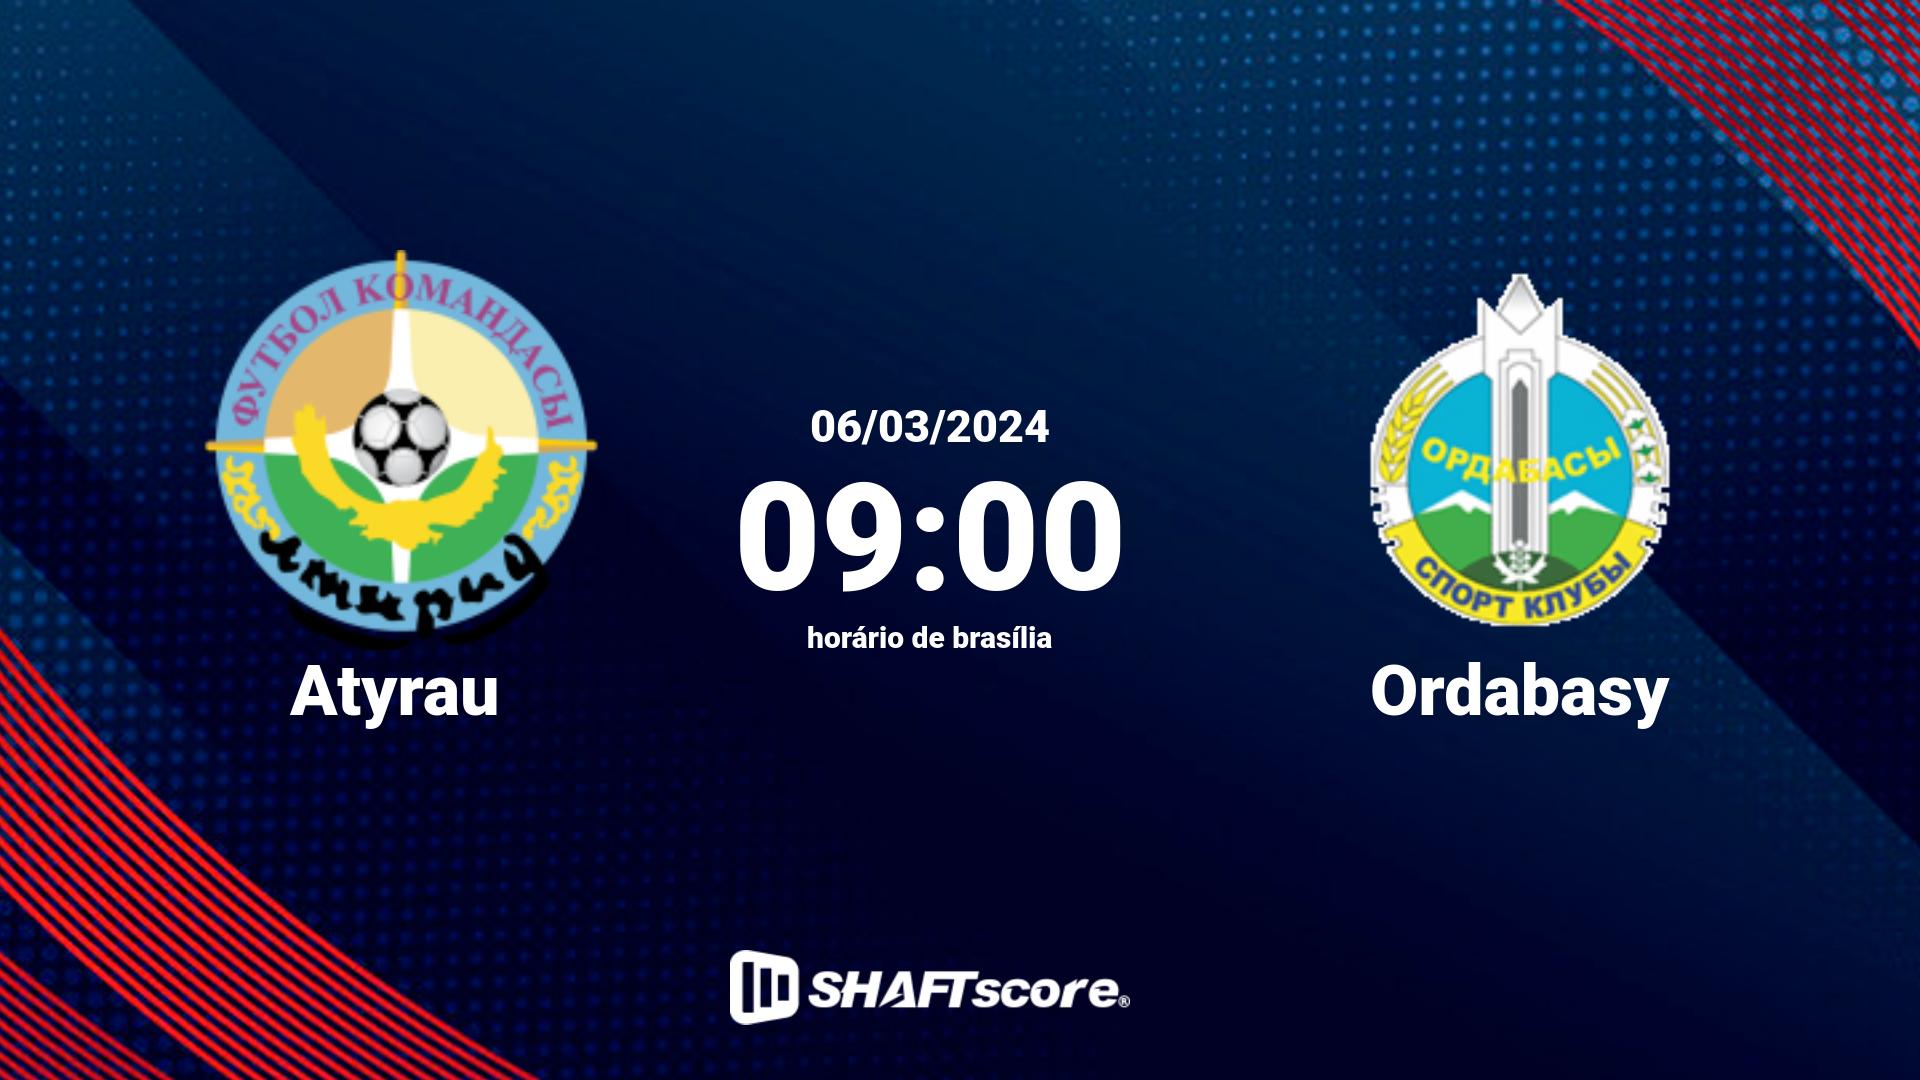 Estatísticas do jogo Atyrau vs Ordabasy 06.03 09:00